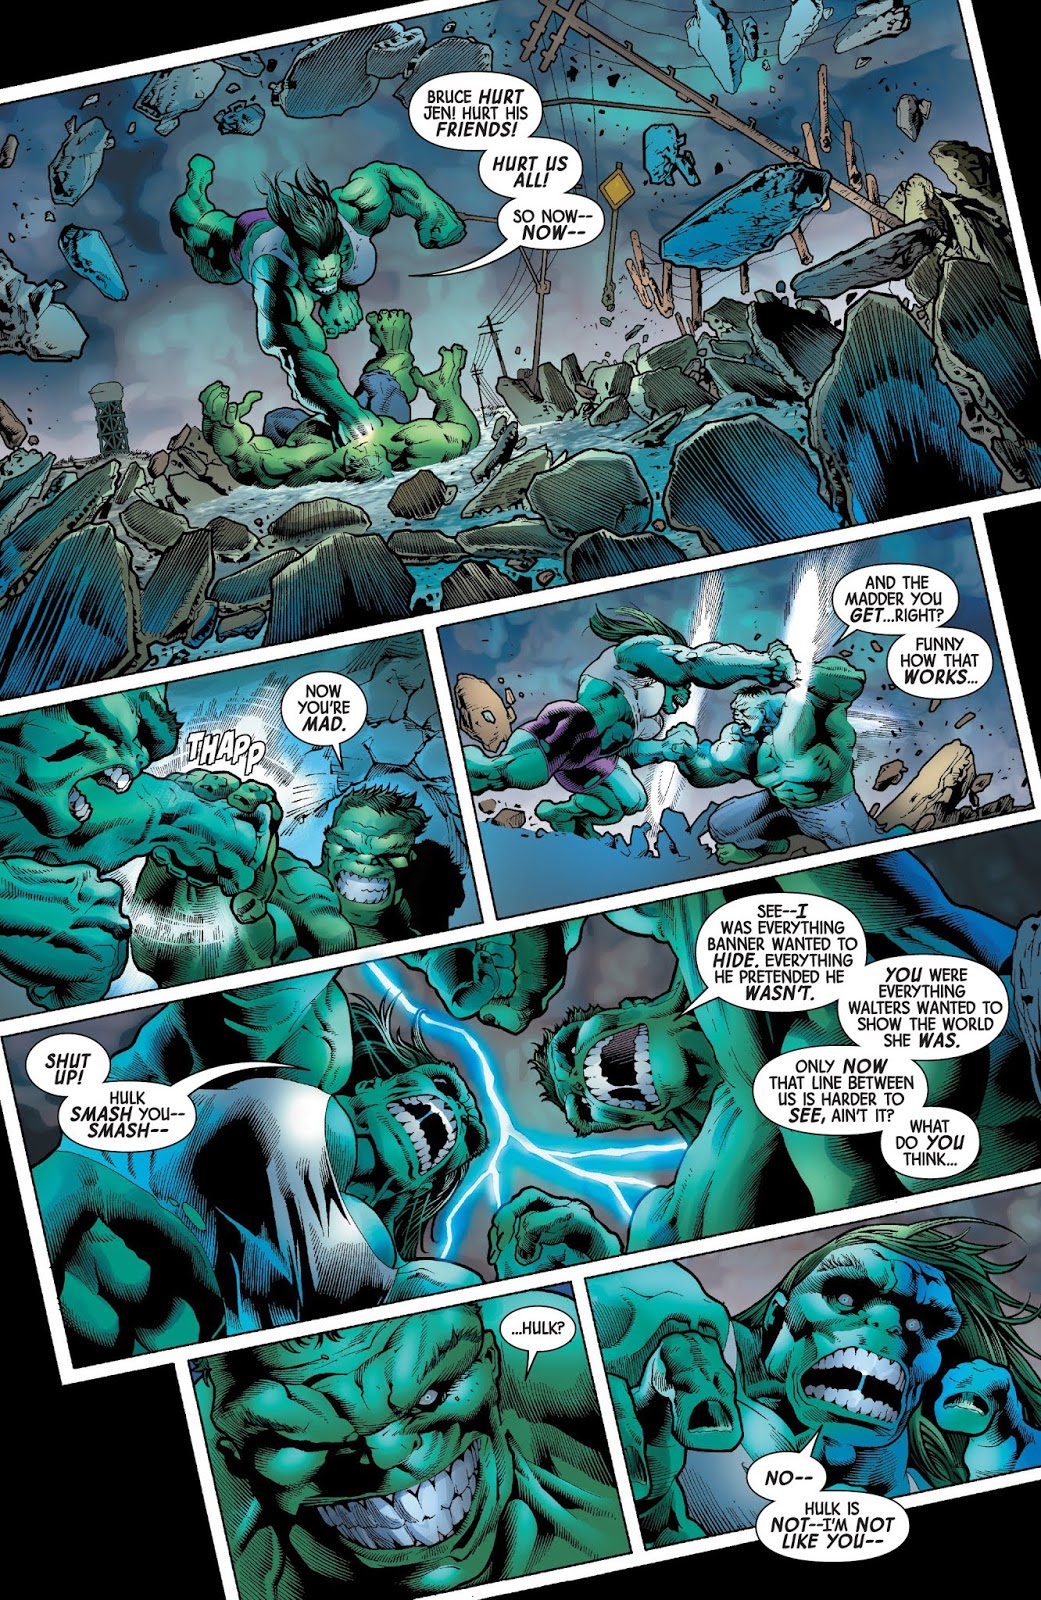 Immortal Hulk The Green Door review